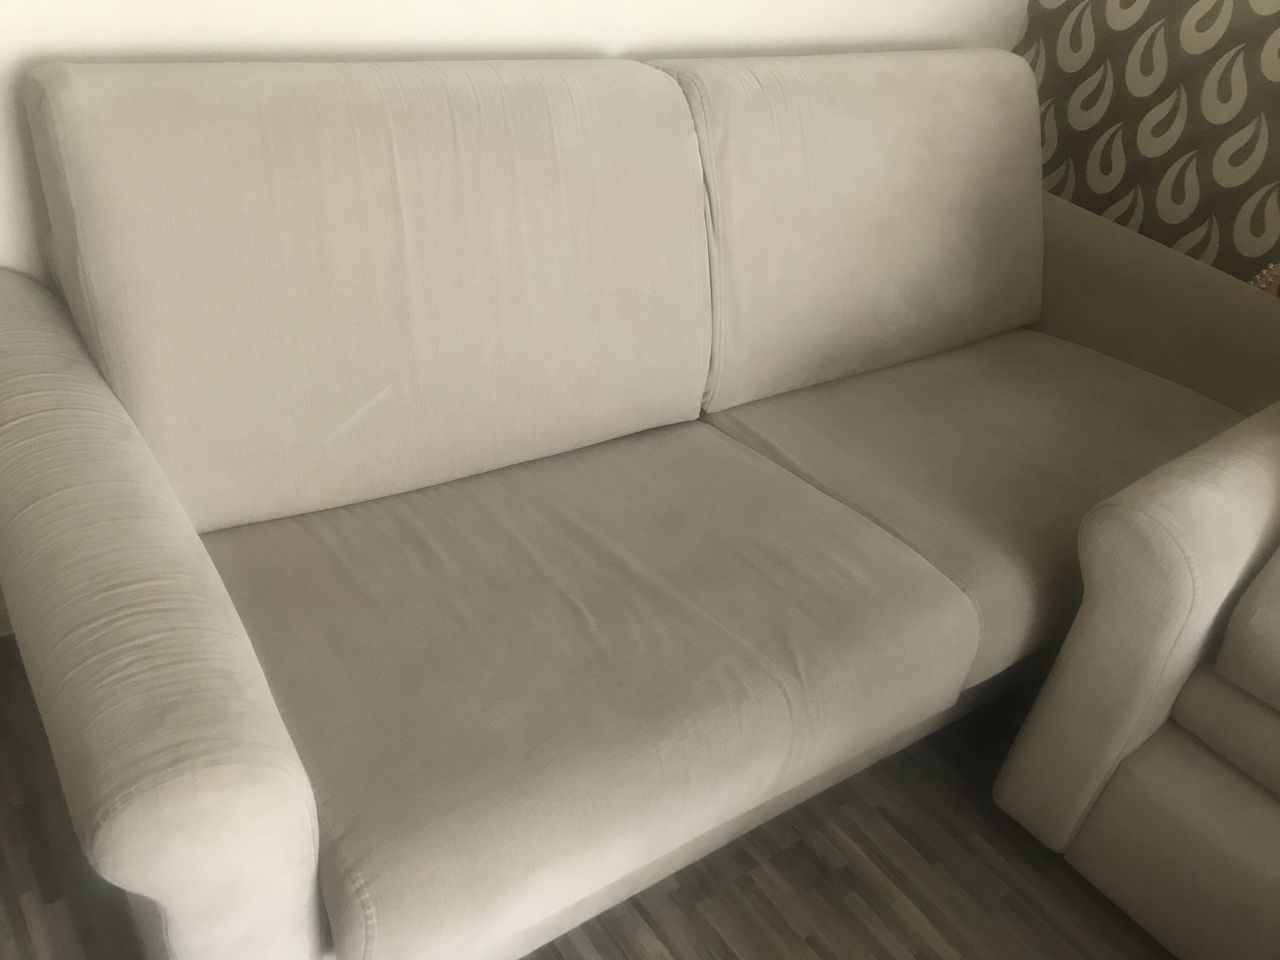 Новый диван пахнет сыростью